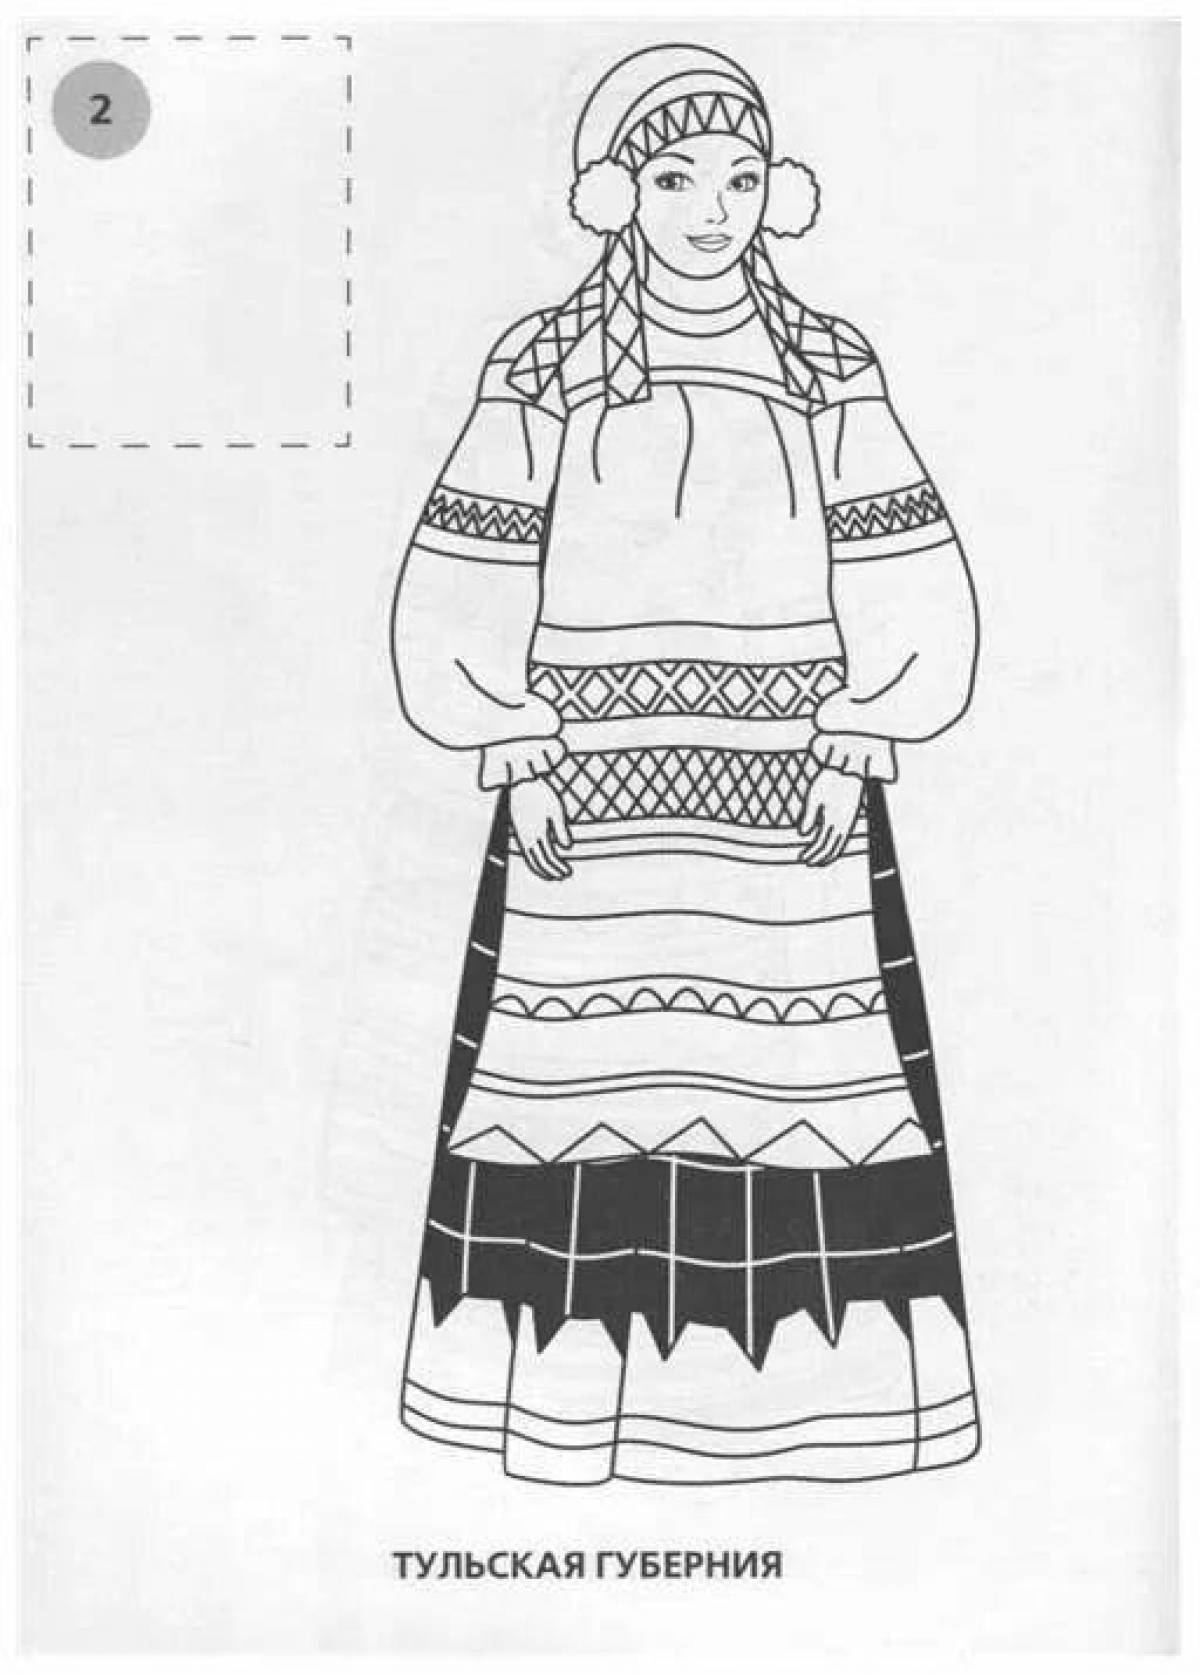 Русский народный костюм рисунок карандашом